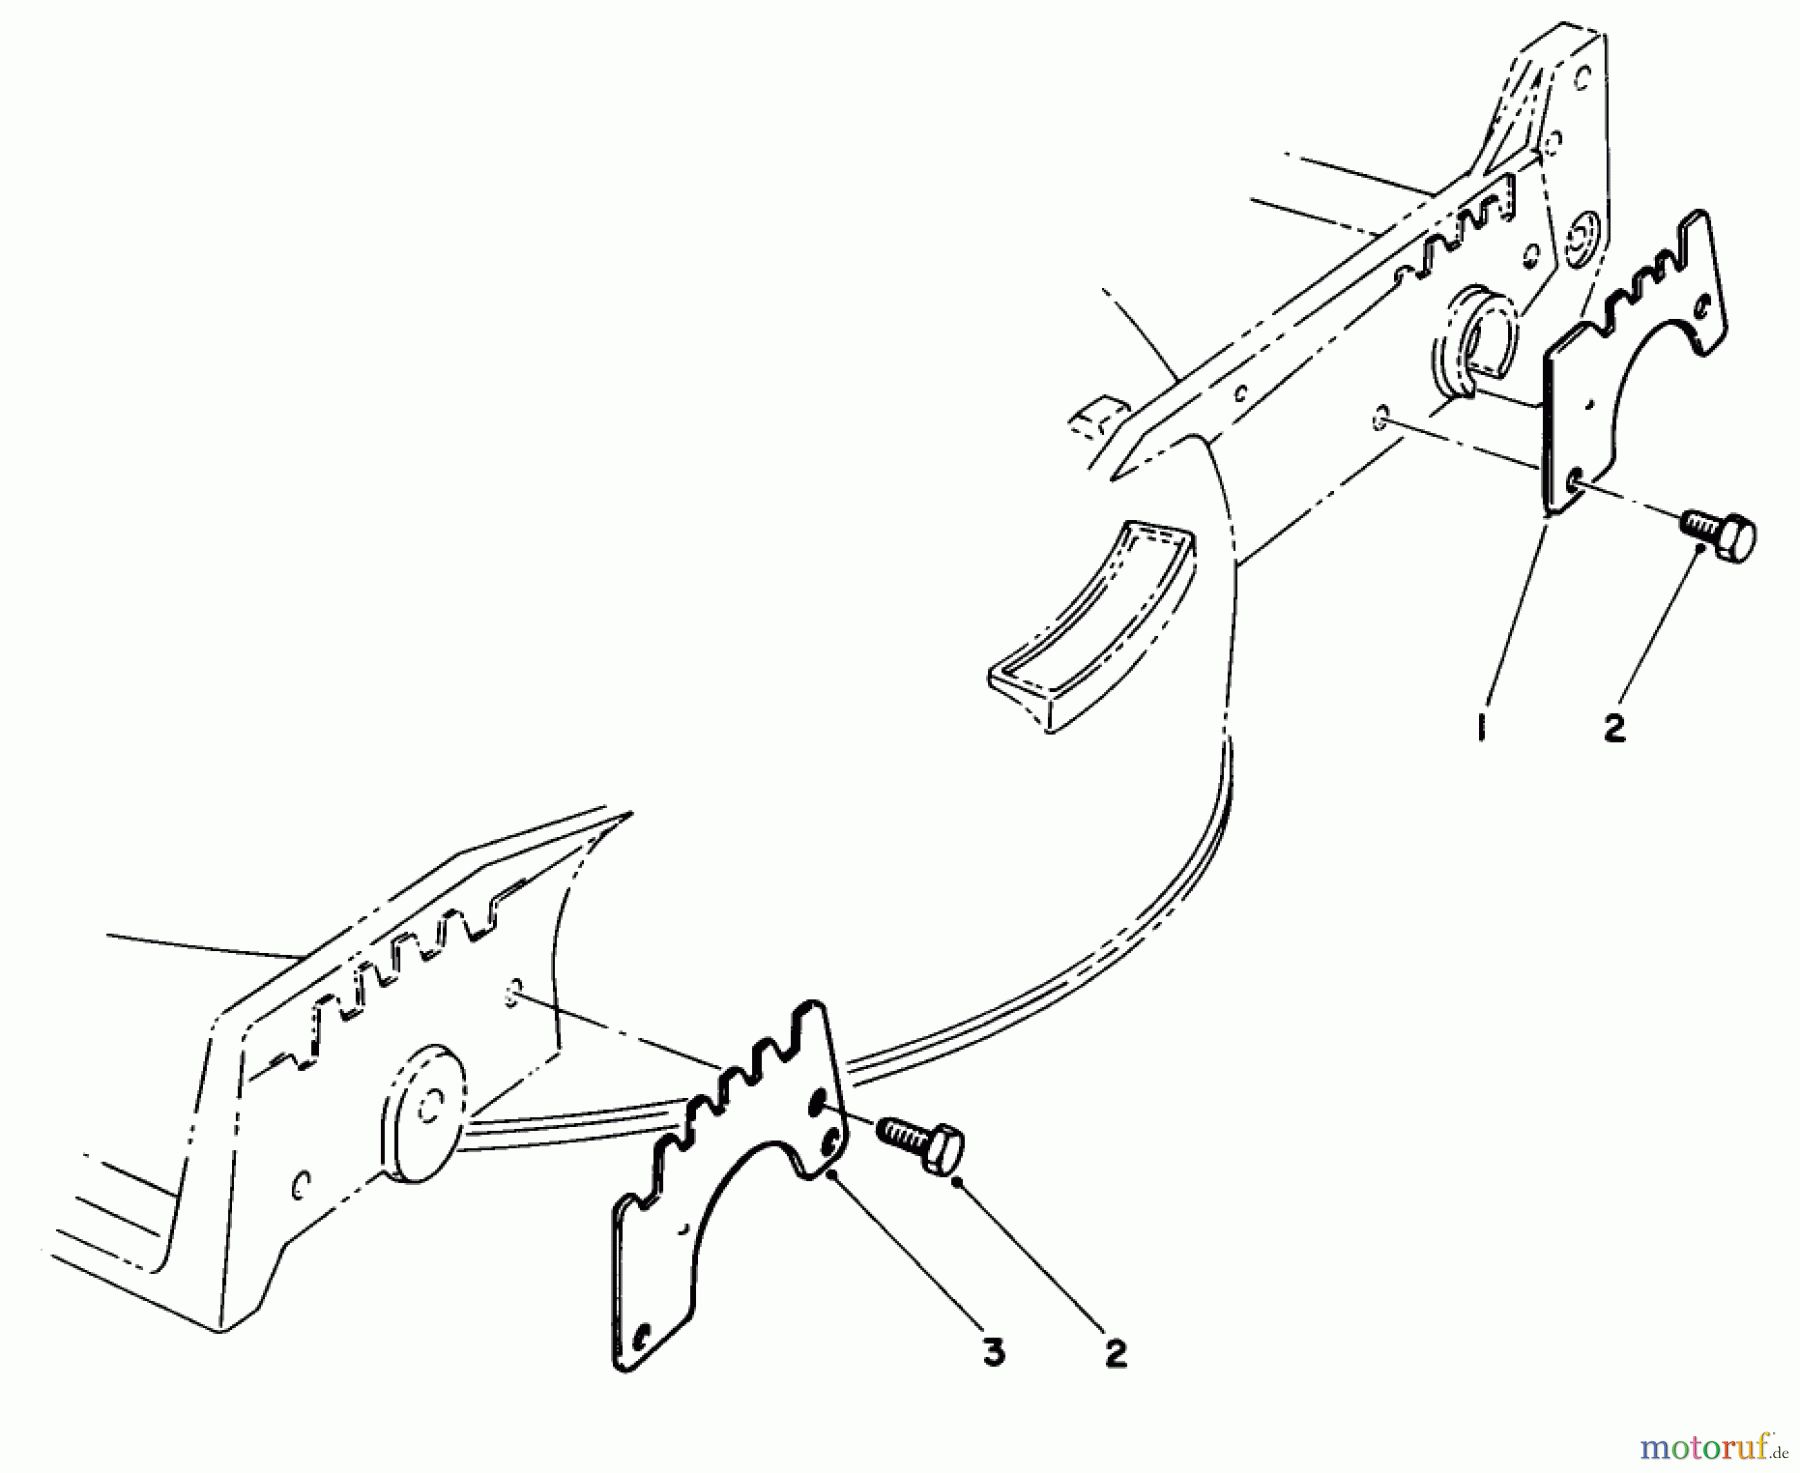  Toro Neu Mowers, Walk-Behind Seite 1 20677 - Toro Lawnmower, 1989 (9000001-9999999) WEAR PLATE MODEL NO. 49-4080 (OPTIONAL)